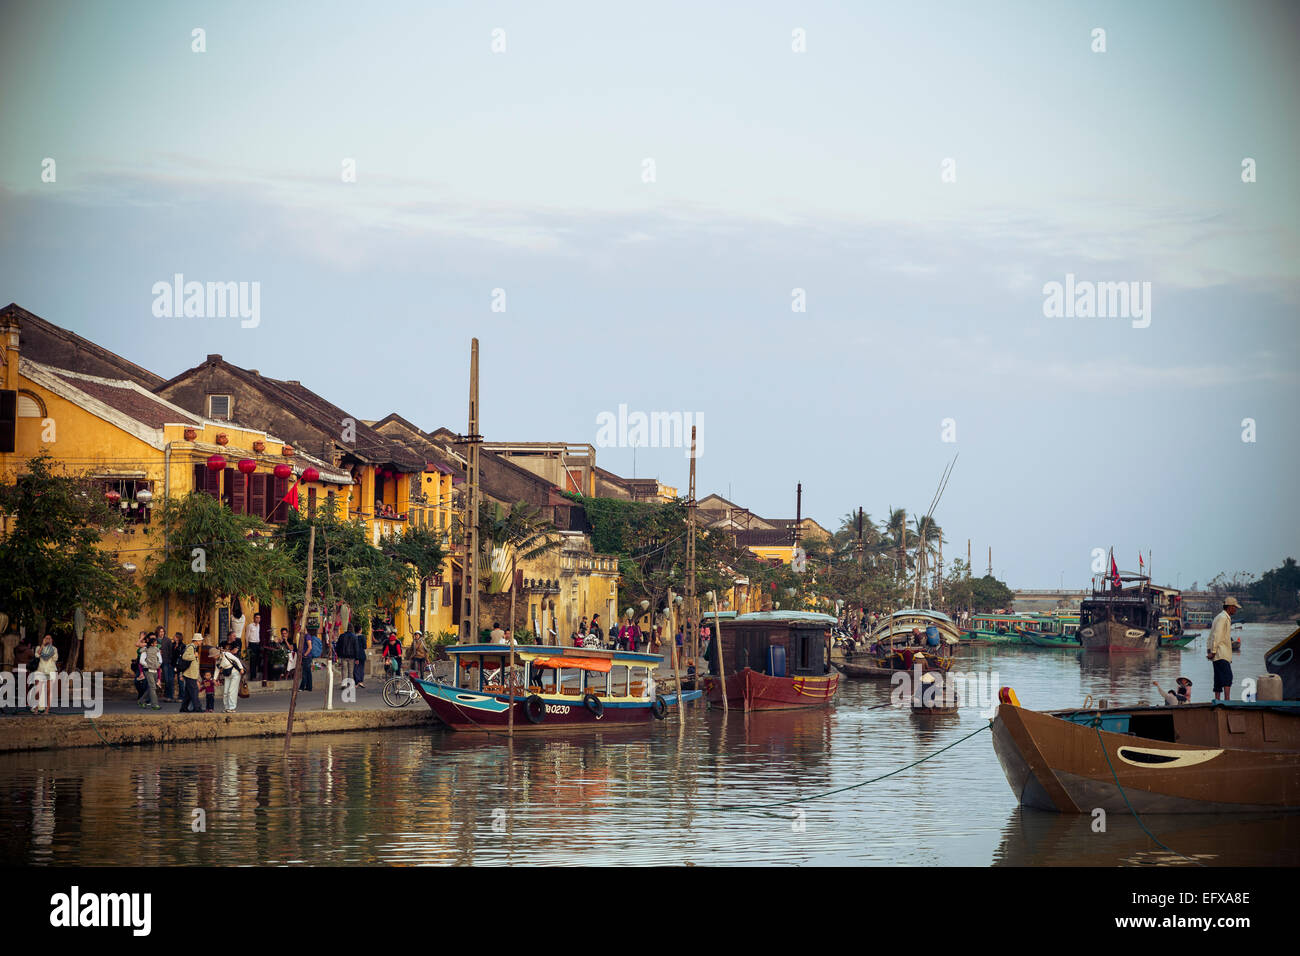 Bateaux à la rivière Thu Bon, Hoi An, Vietnam. Banque D'Images